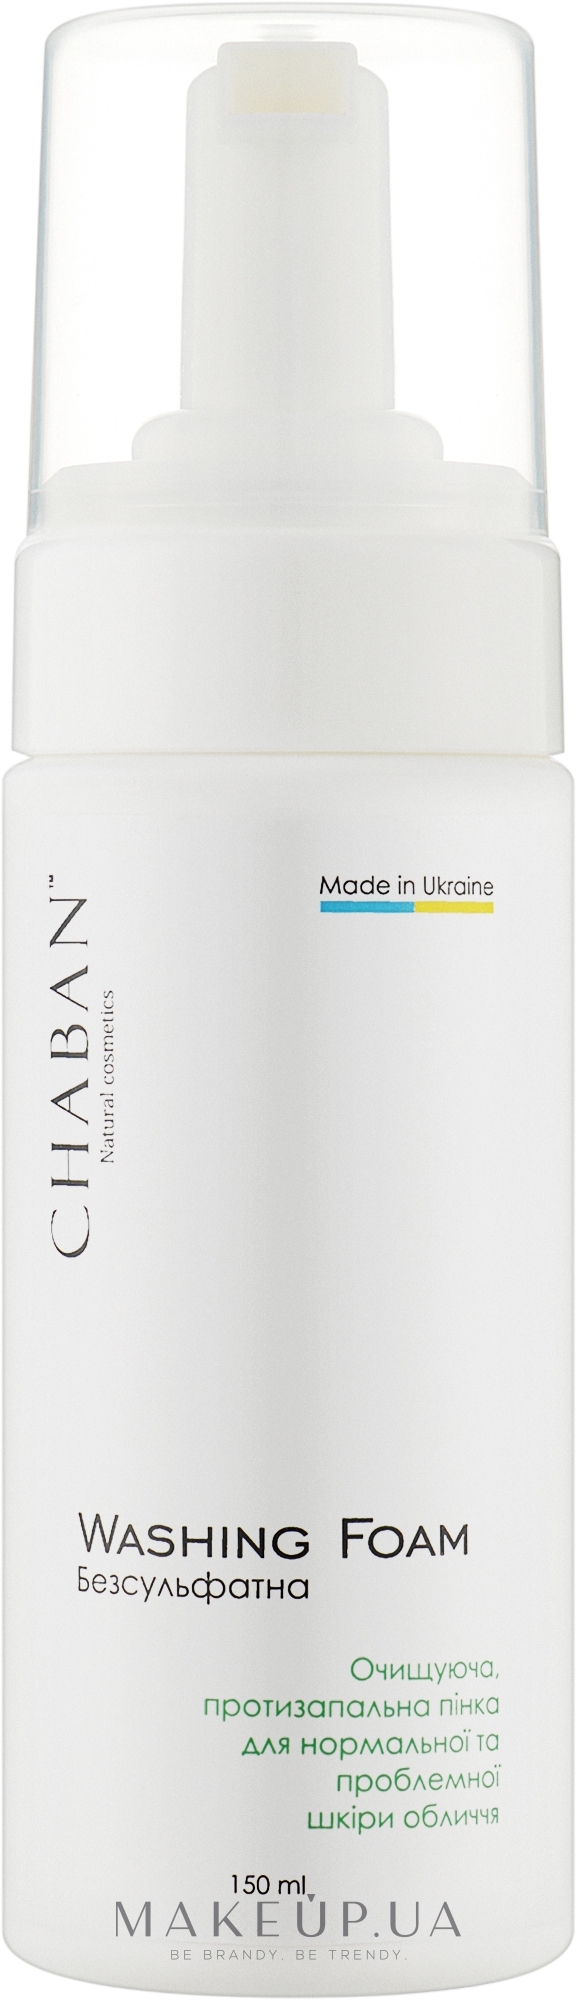 Очищуюча, протизапальна пінка для нормальної та проблемної шкіри обличчя - Chaban Natural Cosmetics Washing Foam — фото 150ml